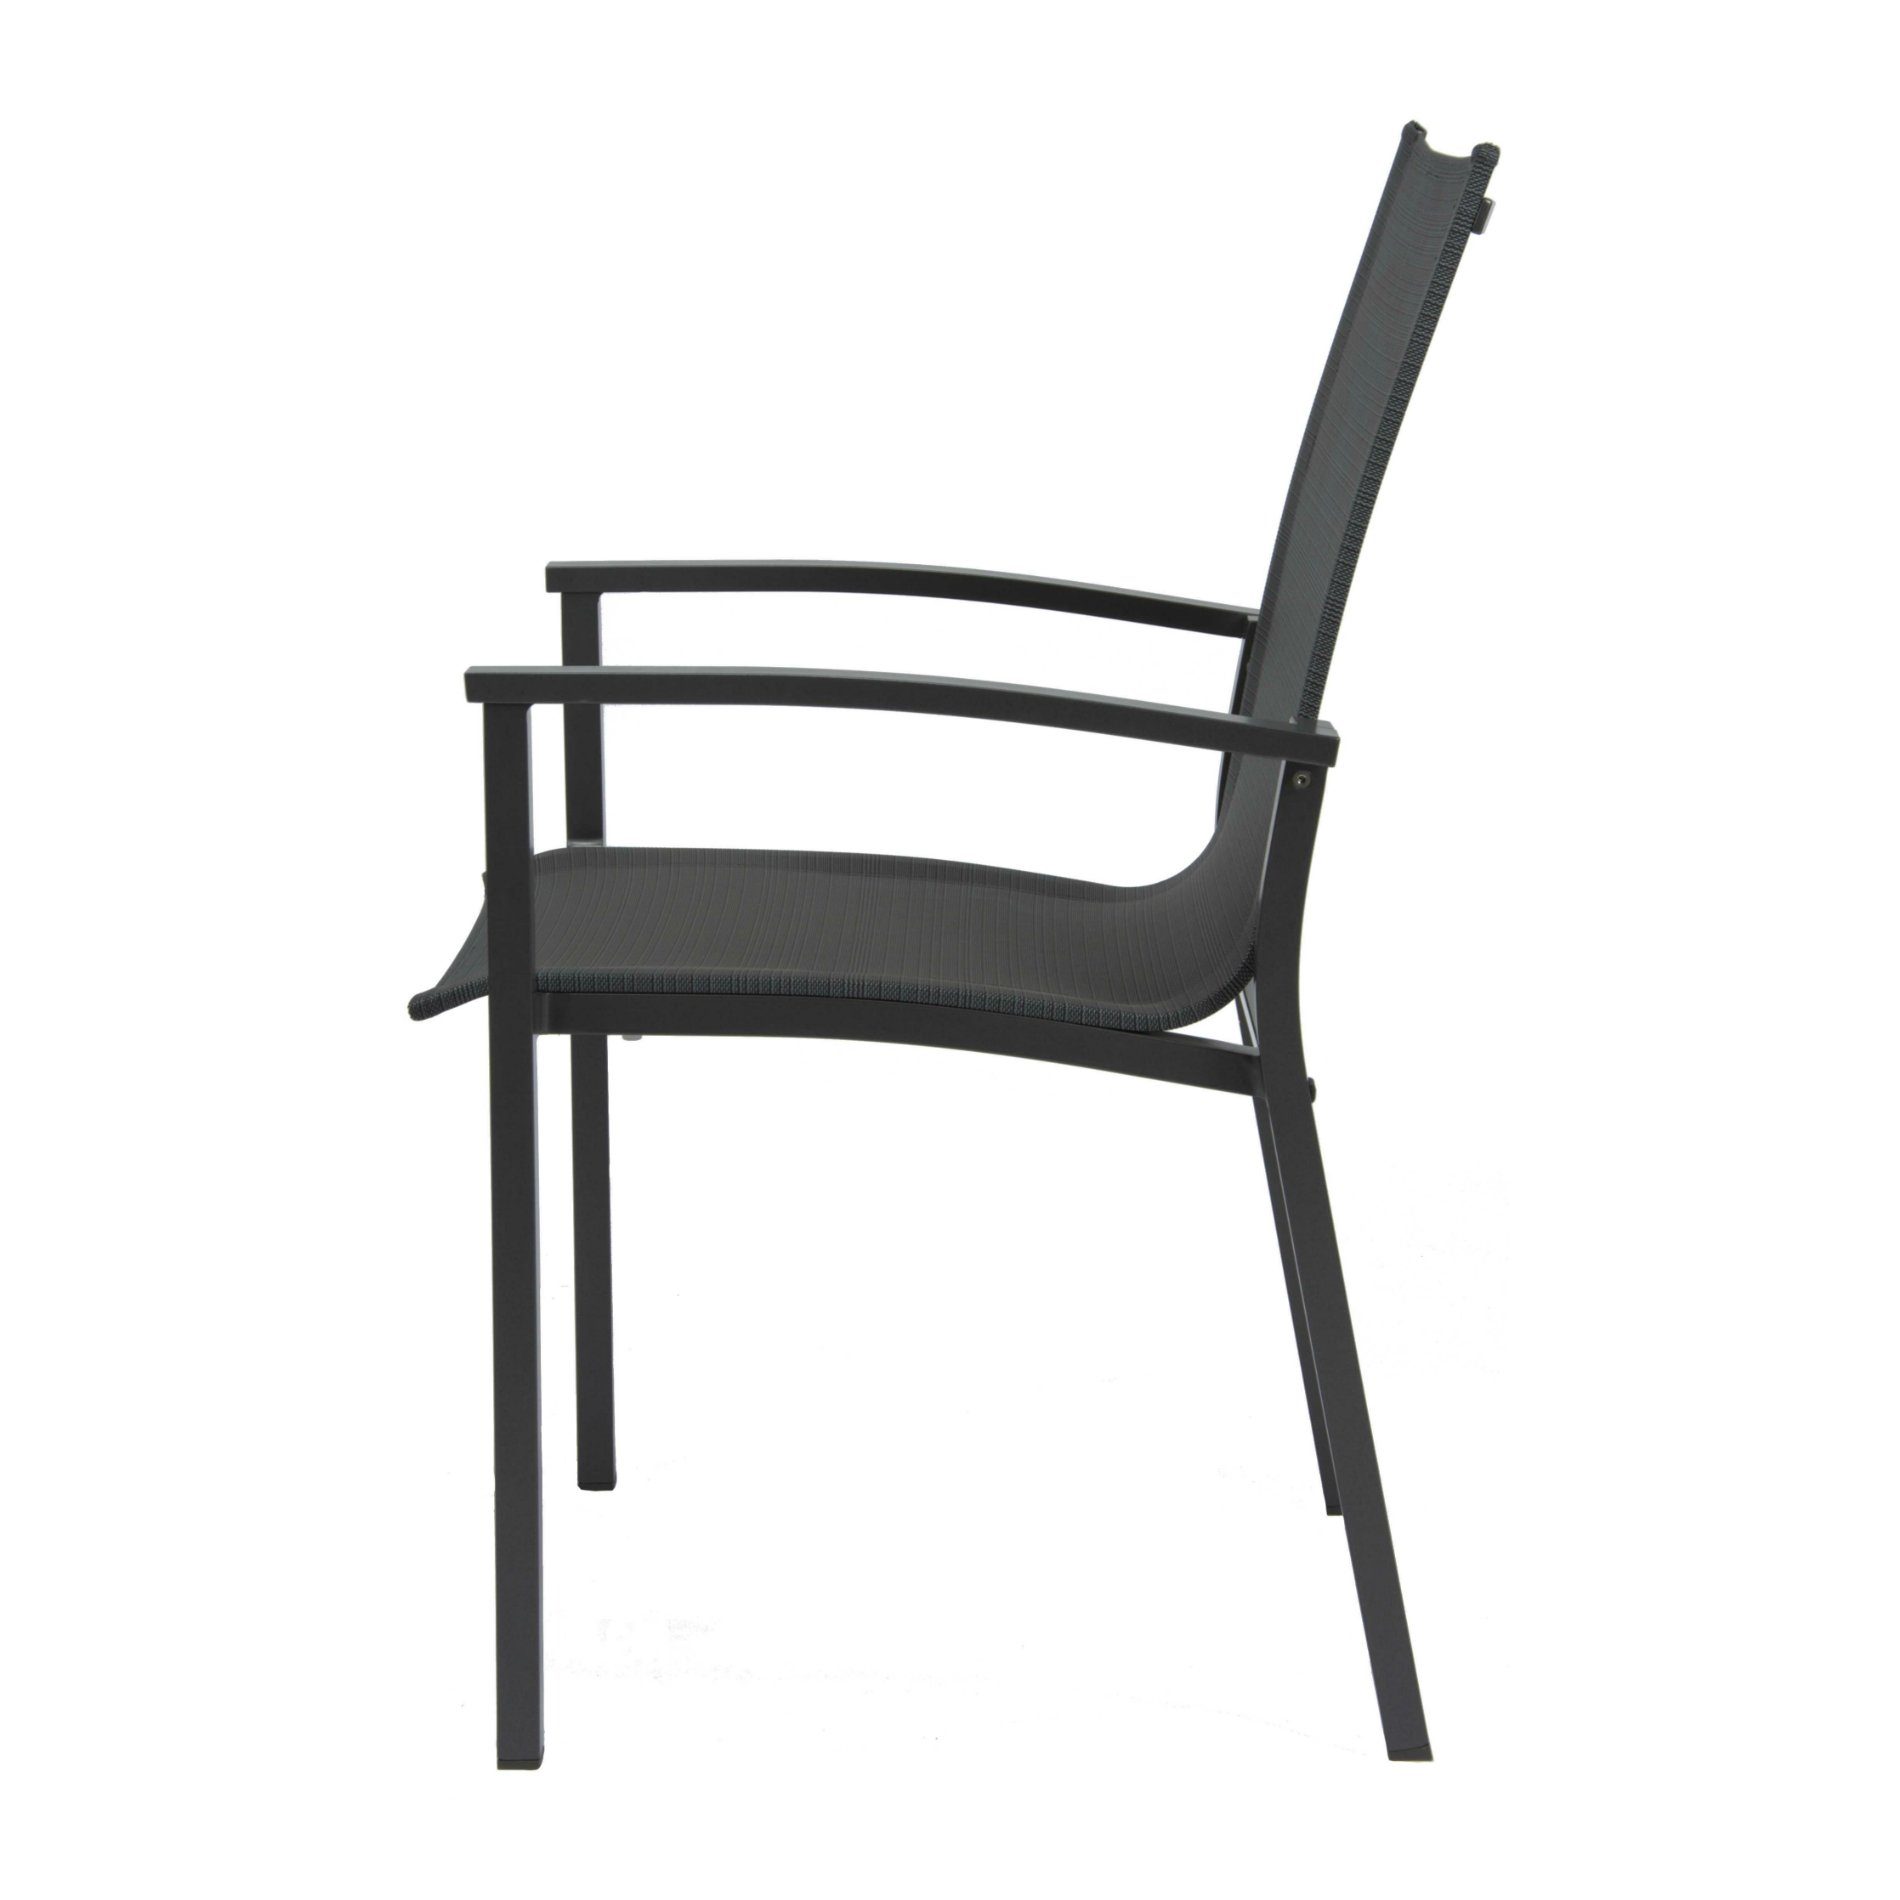 Stern Stapelsessel "Evoee", Gestell Aluminium anthrazit, Sitz- und Rückenfläche Textilgewebe karbon